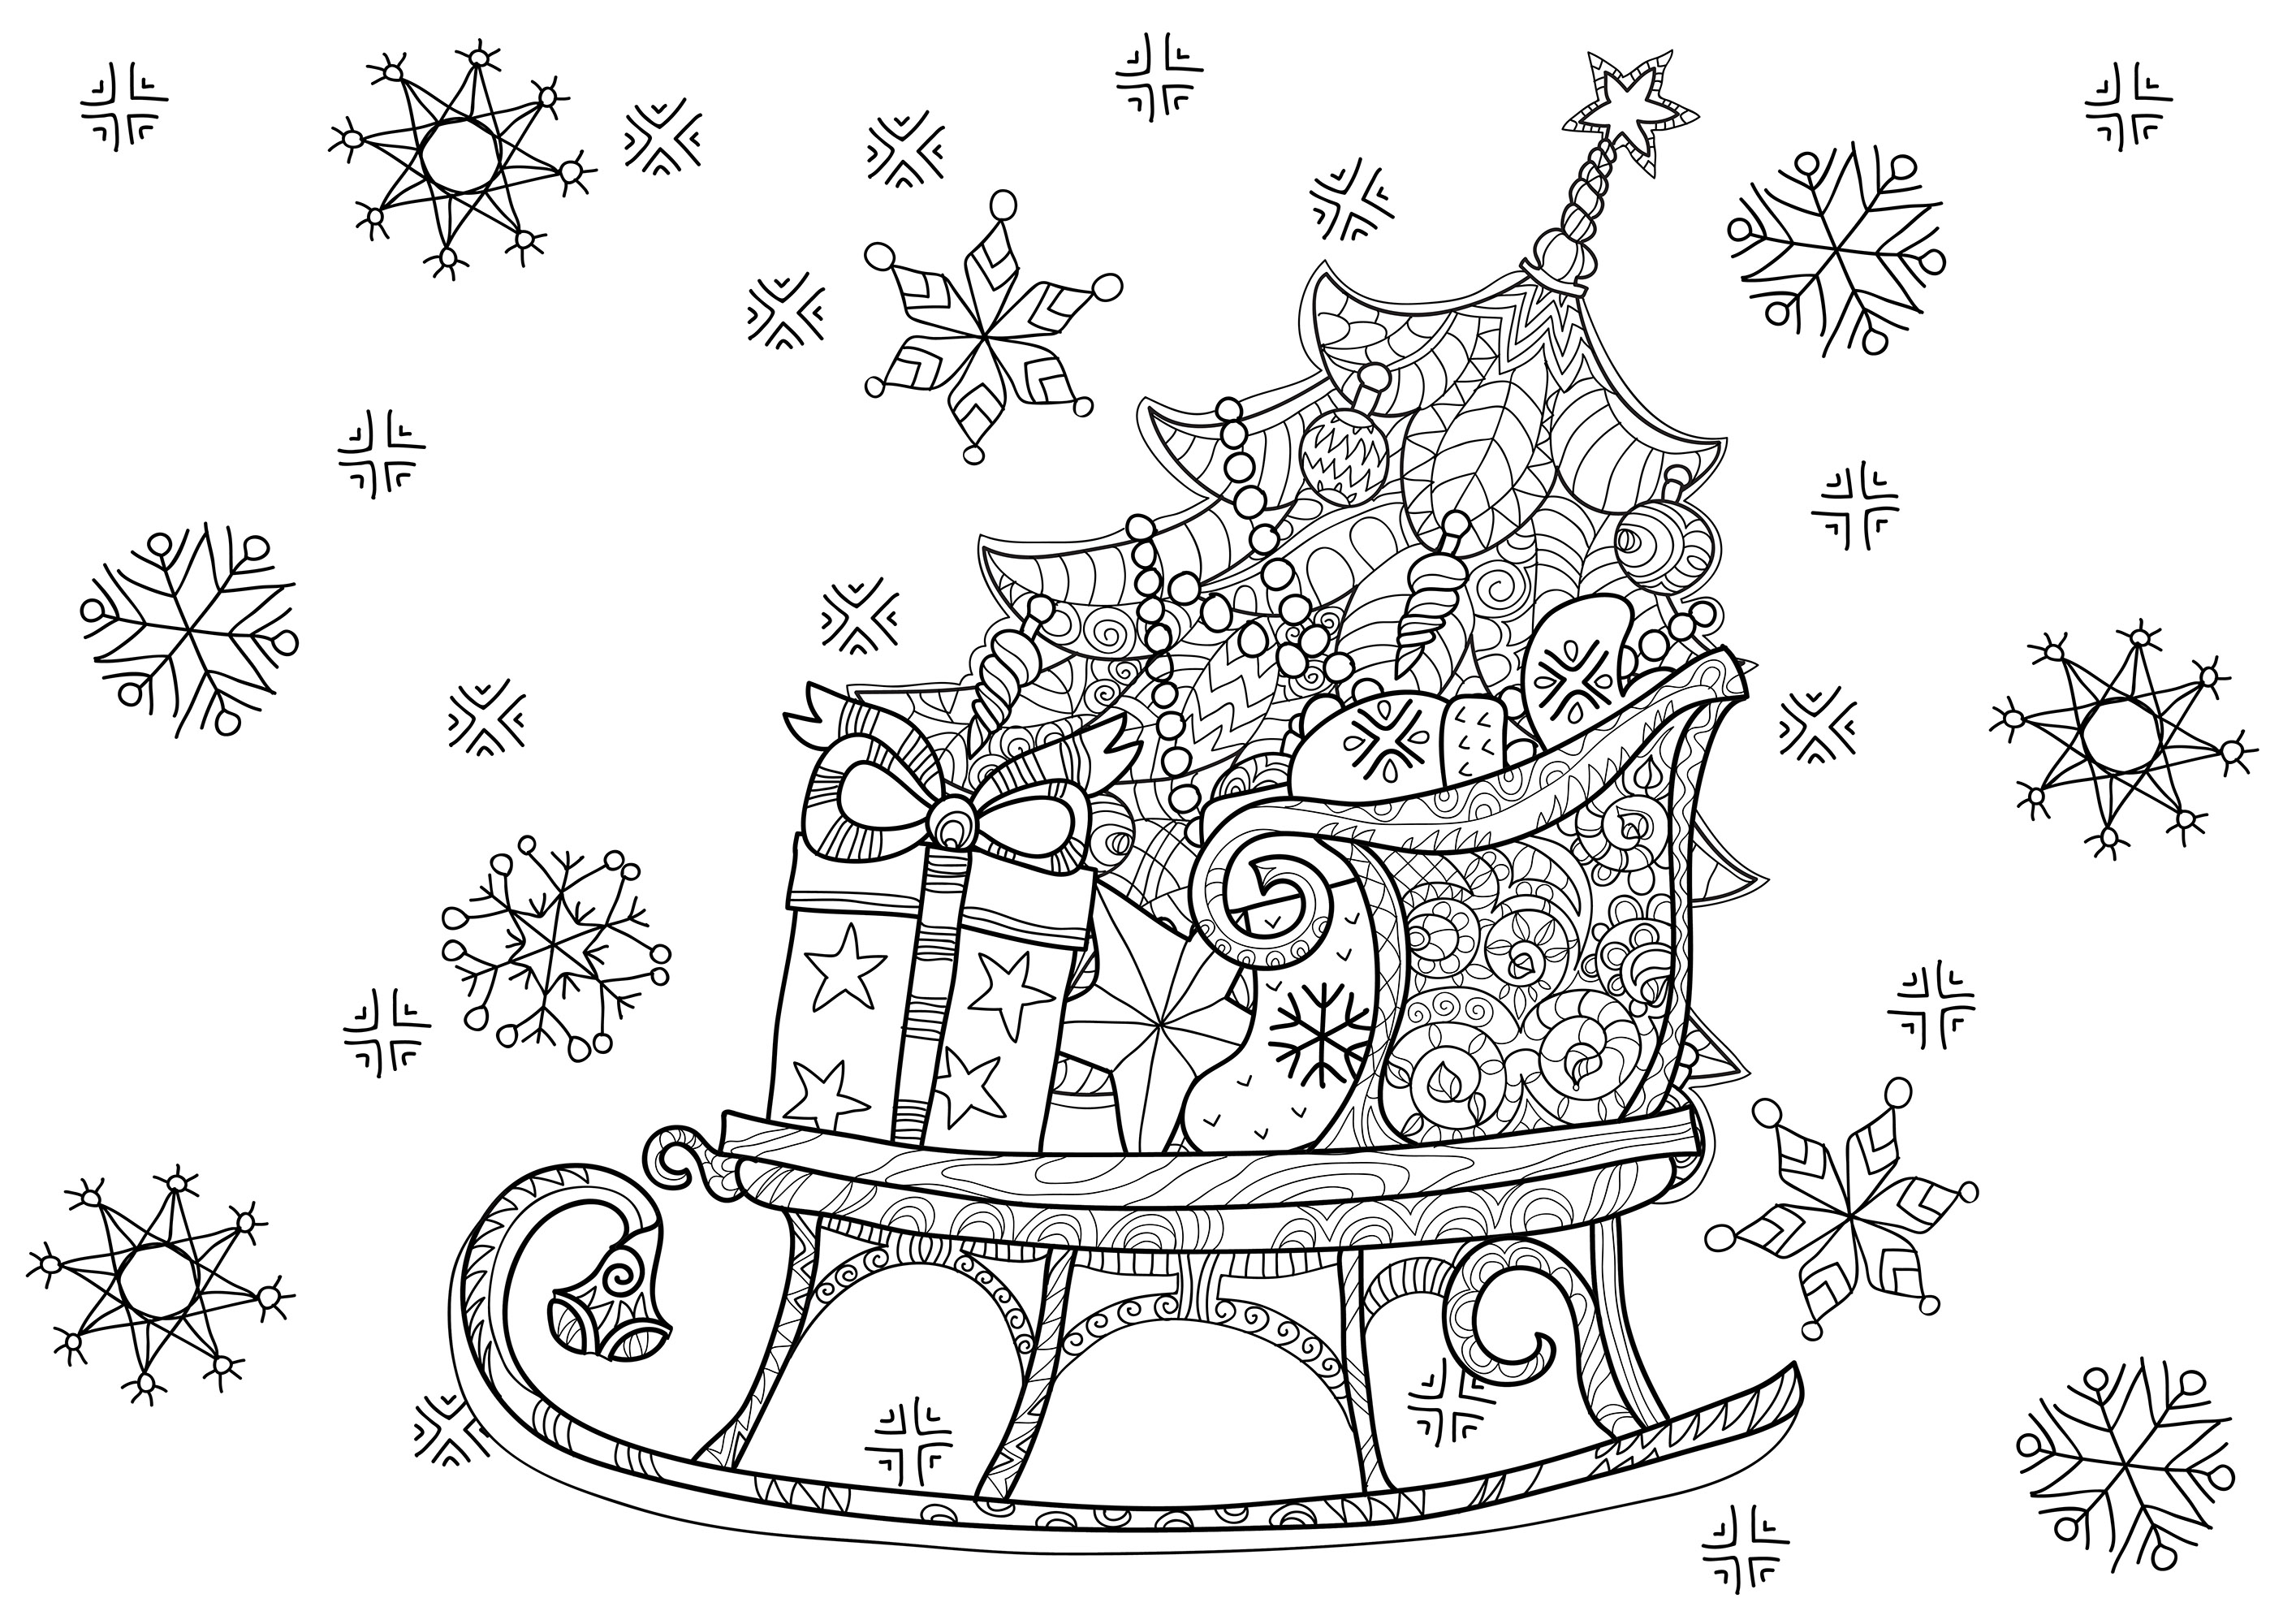 Le traineau du Père Noël rempli de cadeaux, avec également un joli sapin bien décoré, Source : 123rf   Artiste : Yazzik